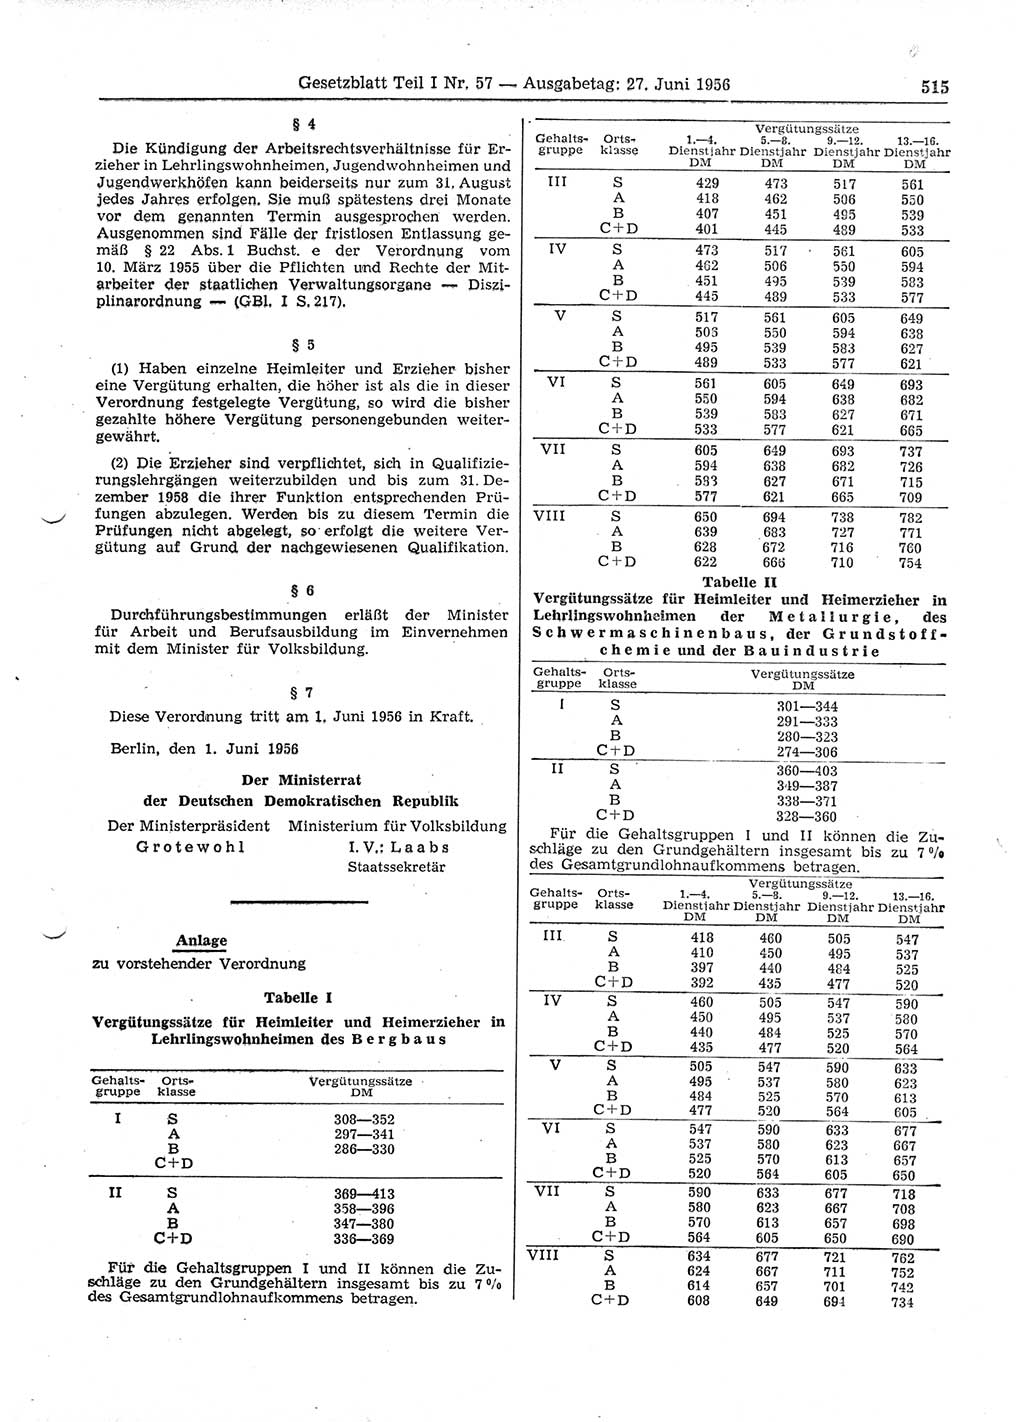 Gesetzblatt (GBl.) der Deutschen Demokratischen Republik (DDR) Teil Ⅰ 1956, Seite 515 (GBl. DDR Ⅰ 1956, S. 515)